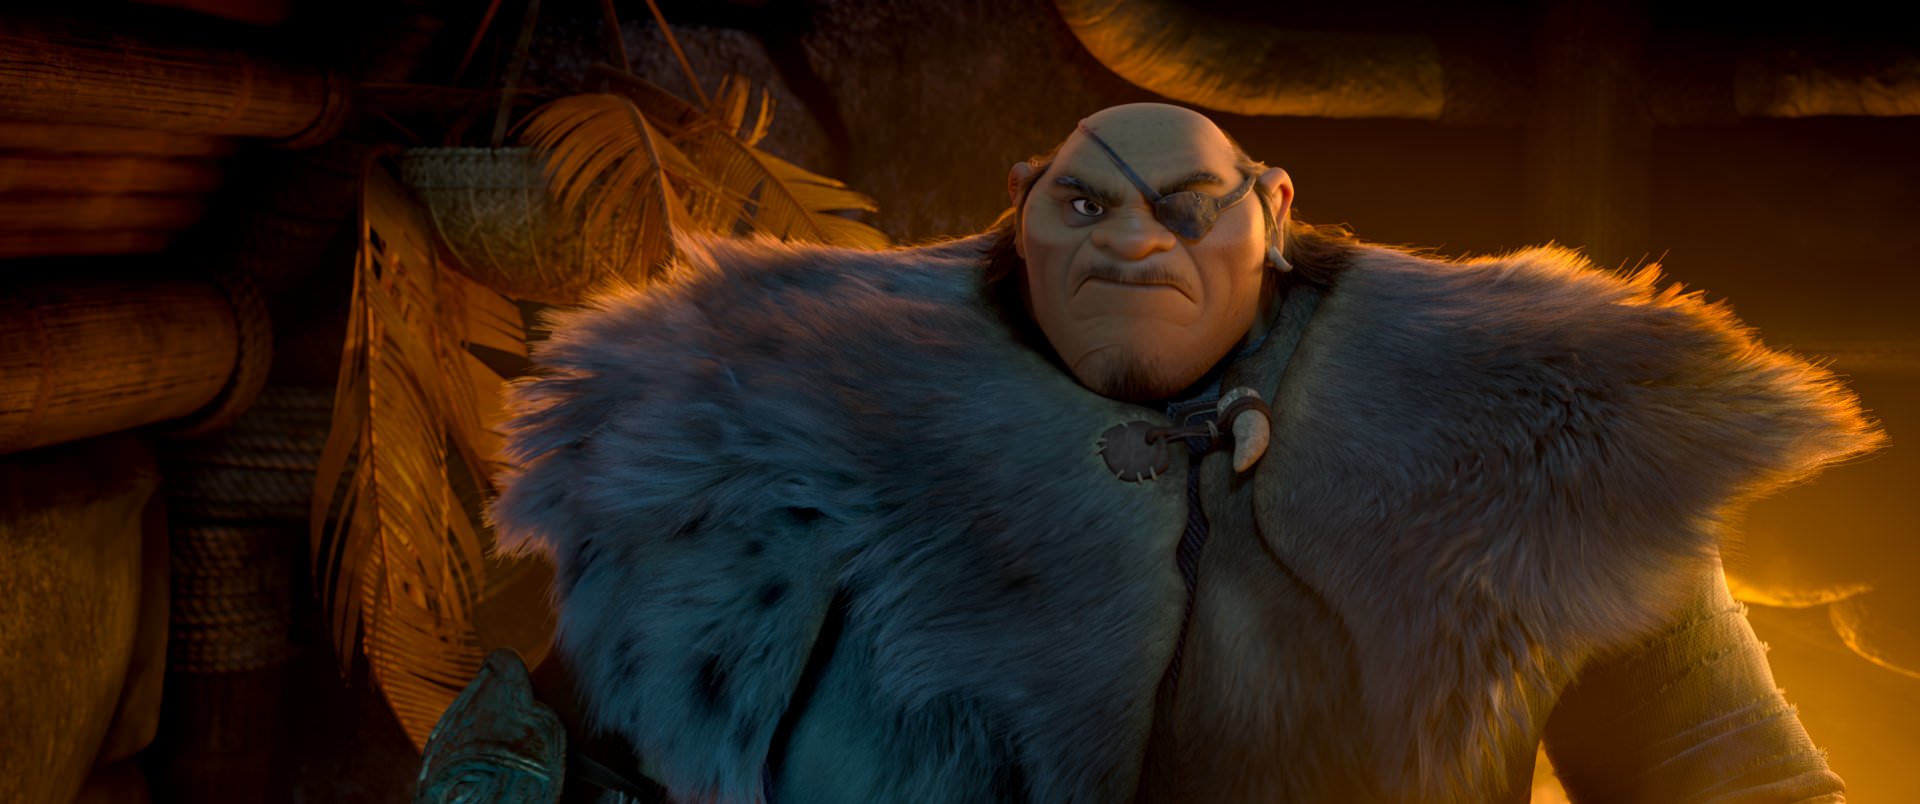 مرد بزرگ و ترسناک در انیمیشن جدید دیزنی به اسم رایا و آخرین اژدها با لباس پشمی